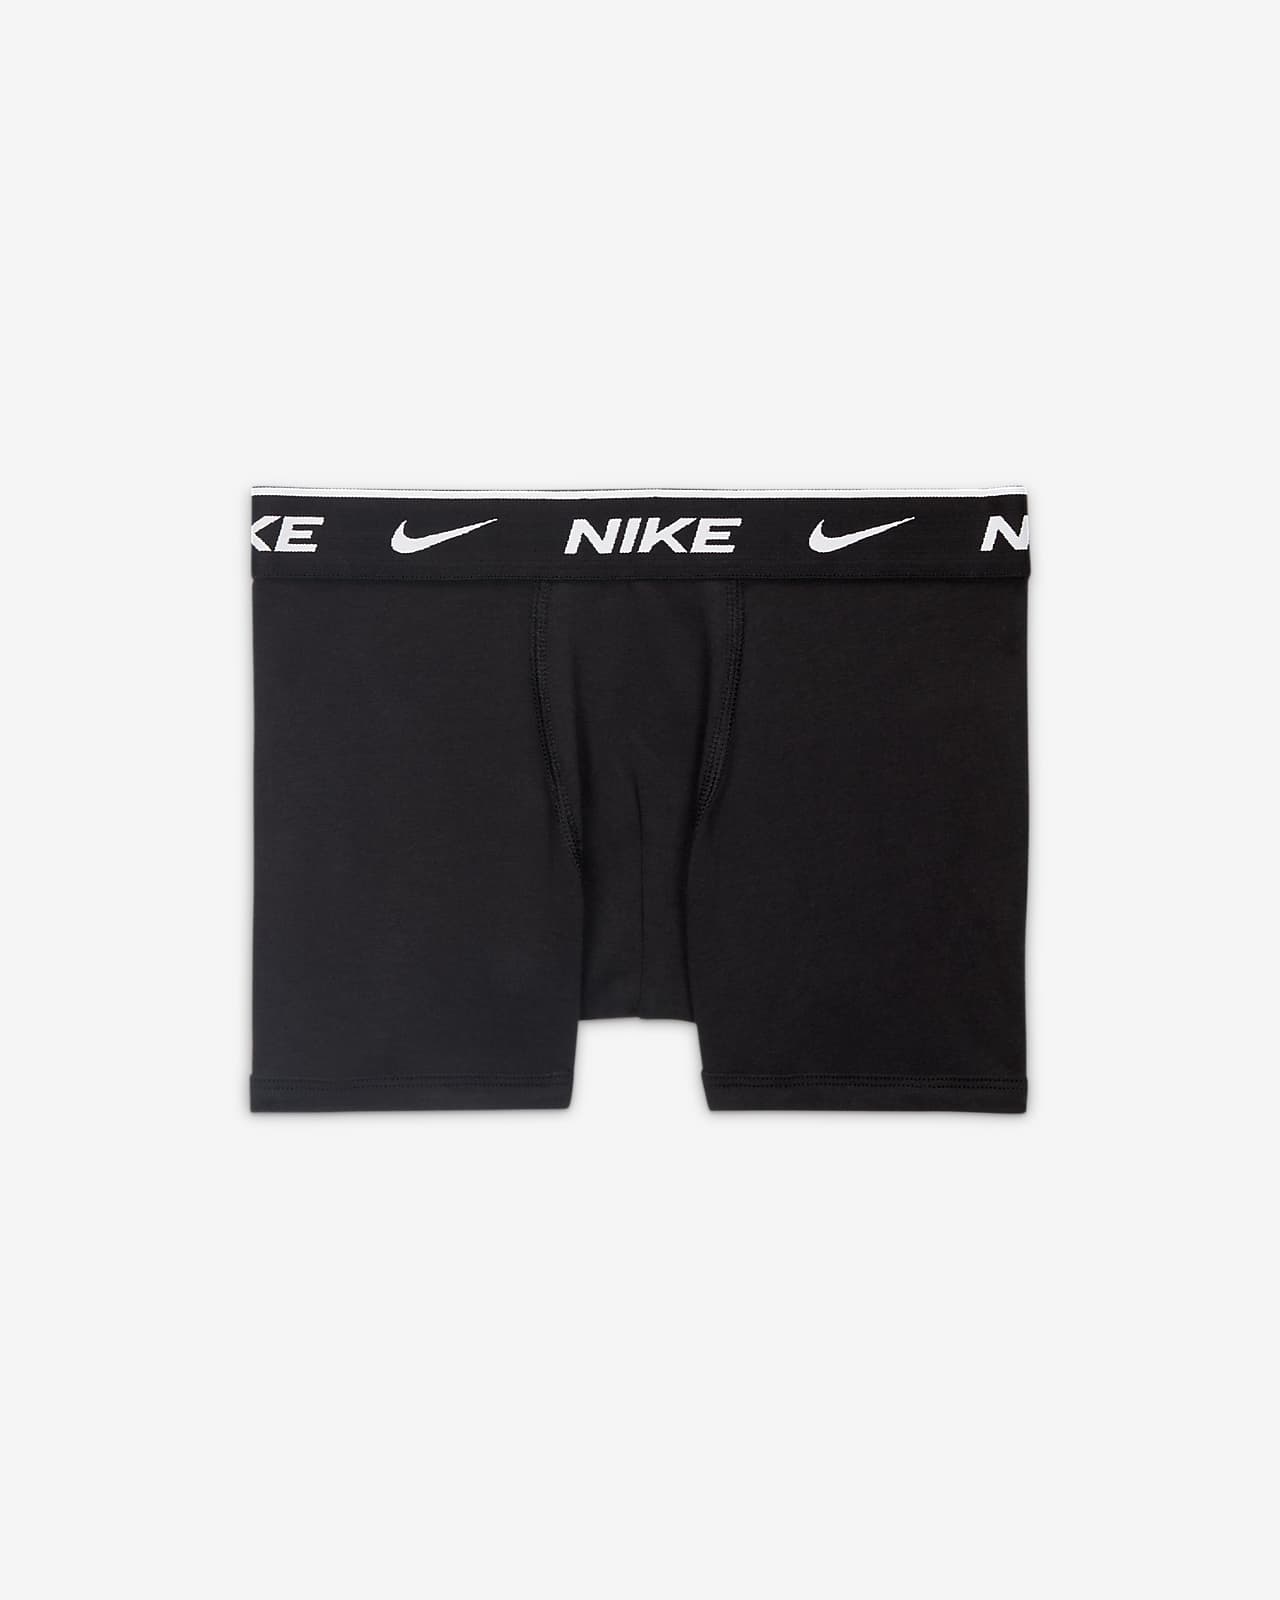 Nike Grey/Black Kids Boxers 3 Packs